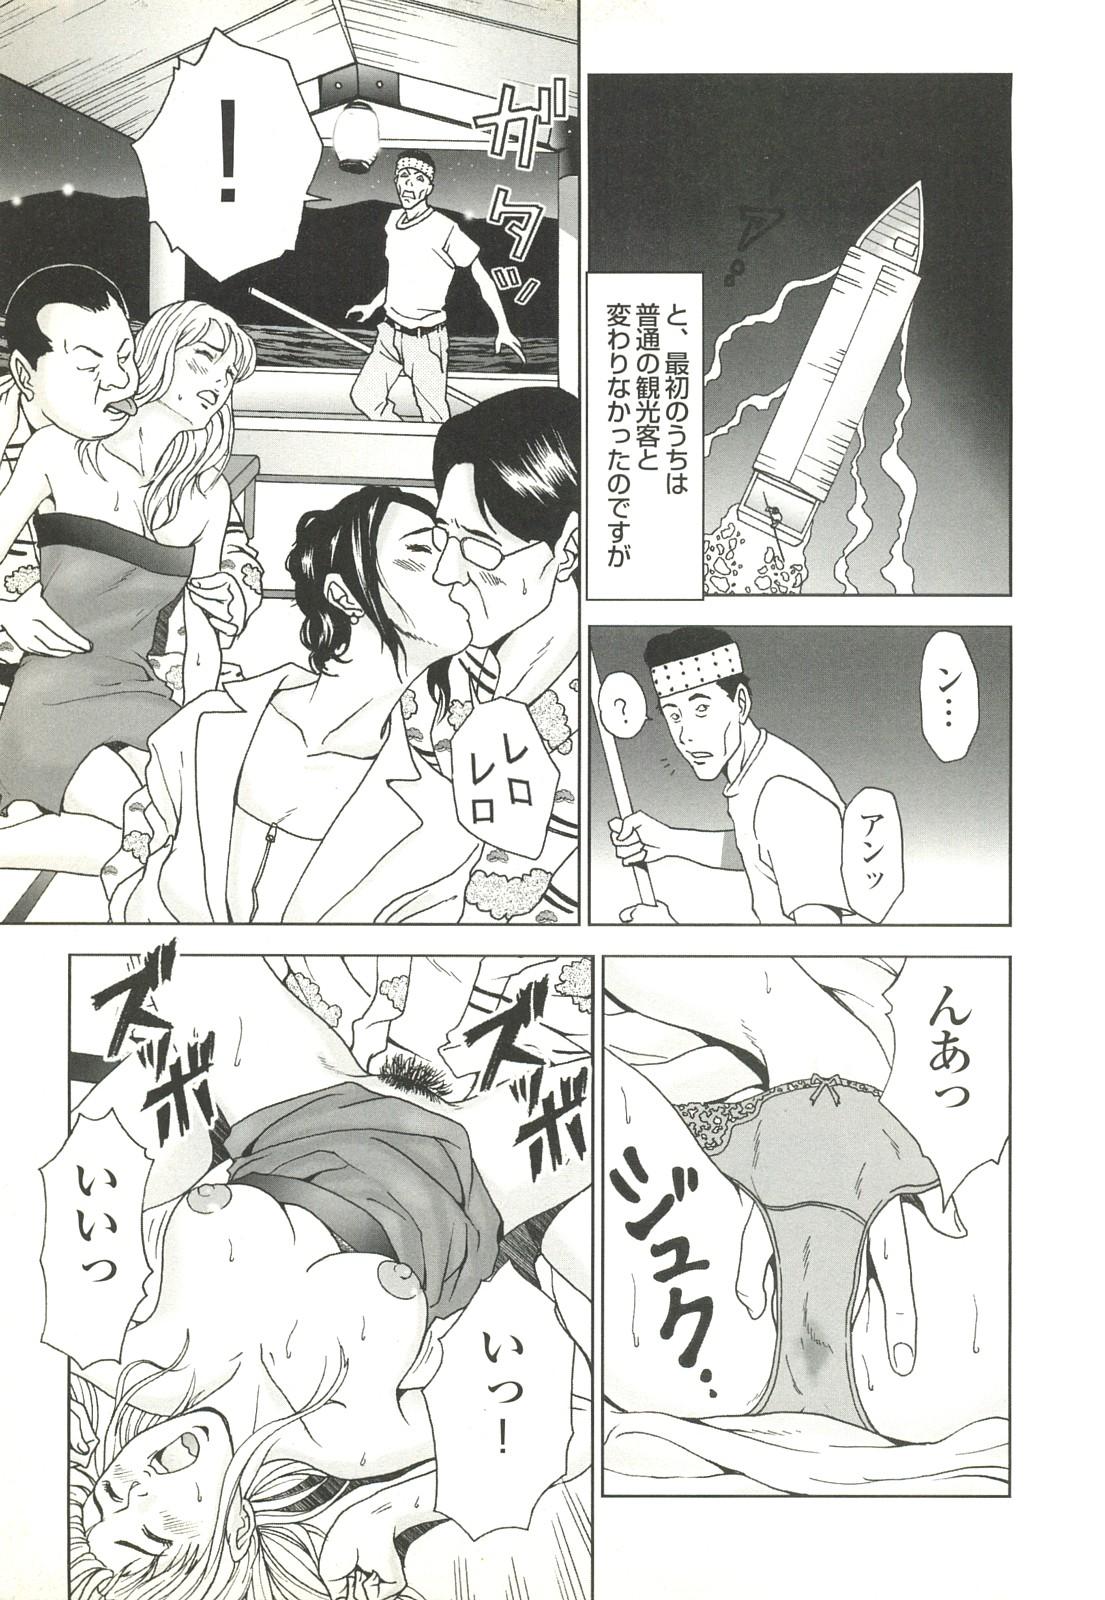 コミック裏モノJAPAN Vol.18 今井のりたつスペシャル号 280